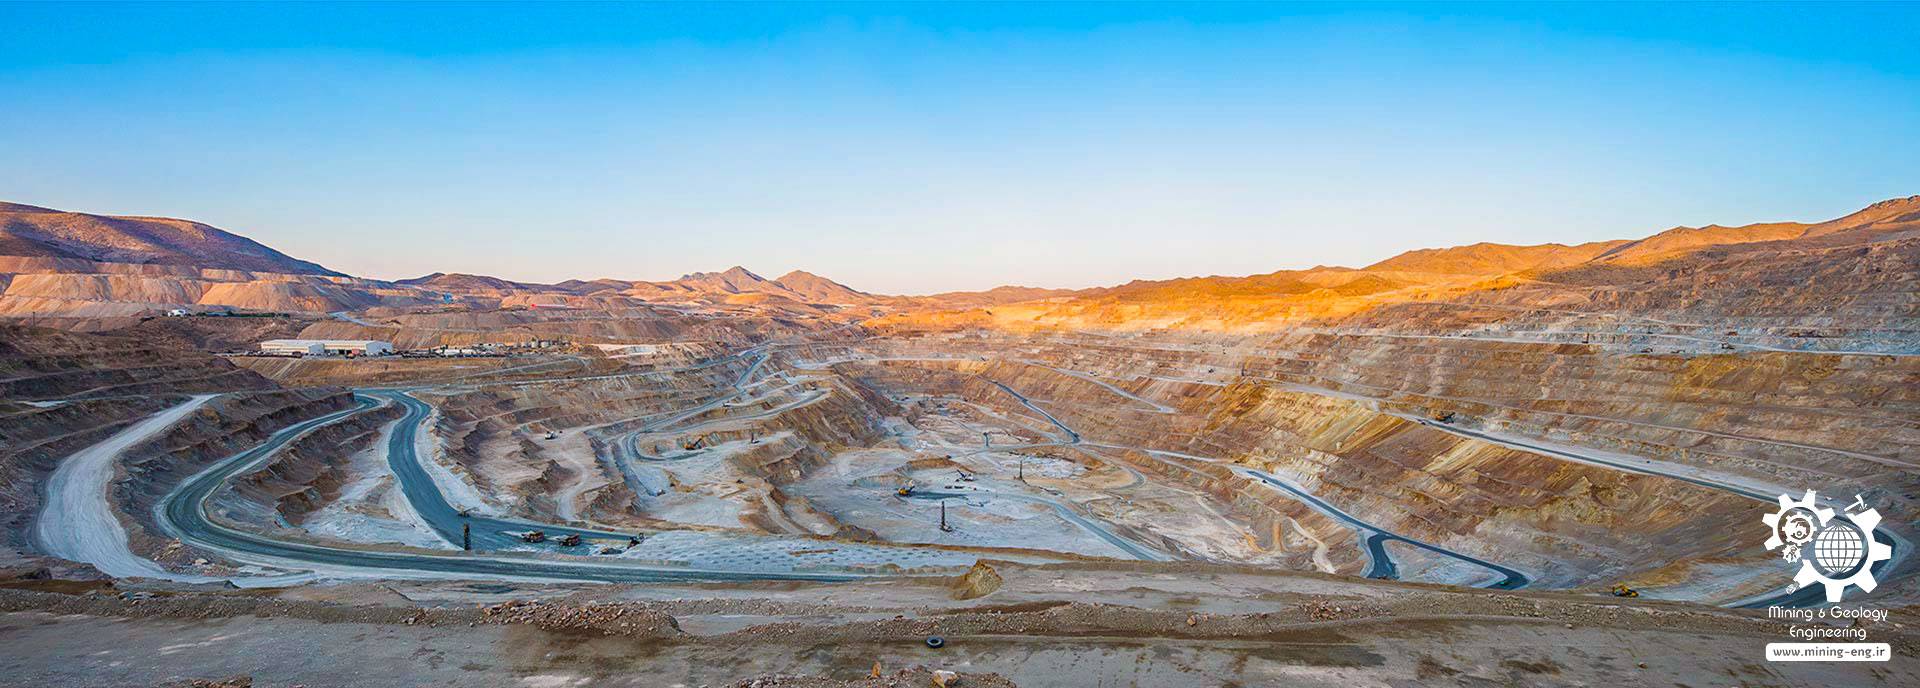 Sarcheshmeh Copper Mine 20